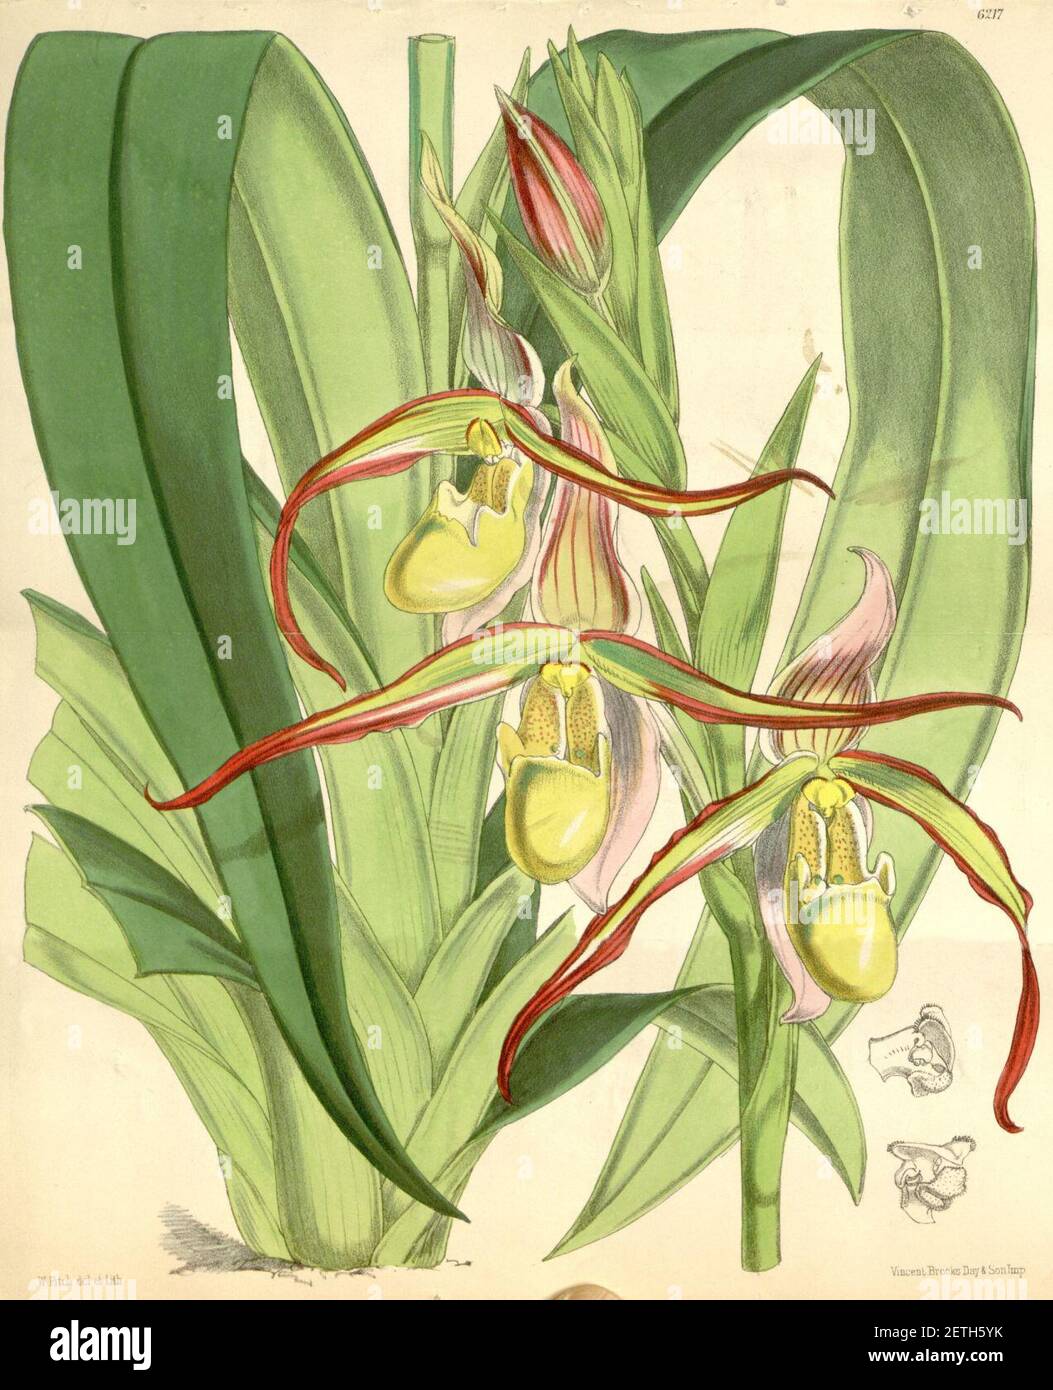 Phragmipedium longifolium (as Cypripedium roezlii) - Curtis' 102 (Ser. 3 no. 32) pl. 6217 (1876). Stock Photo